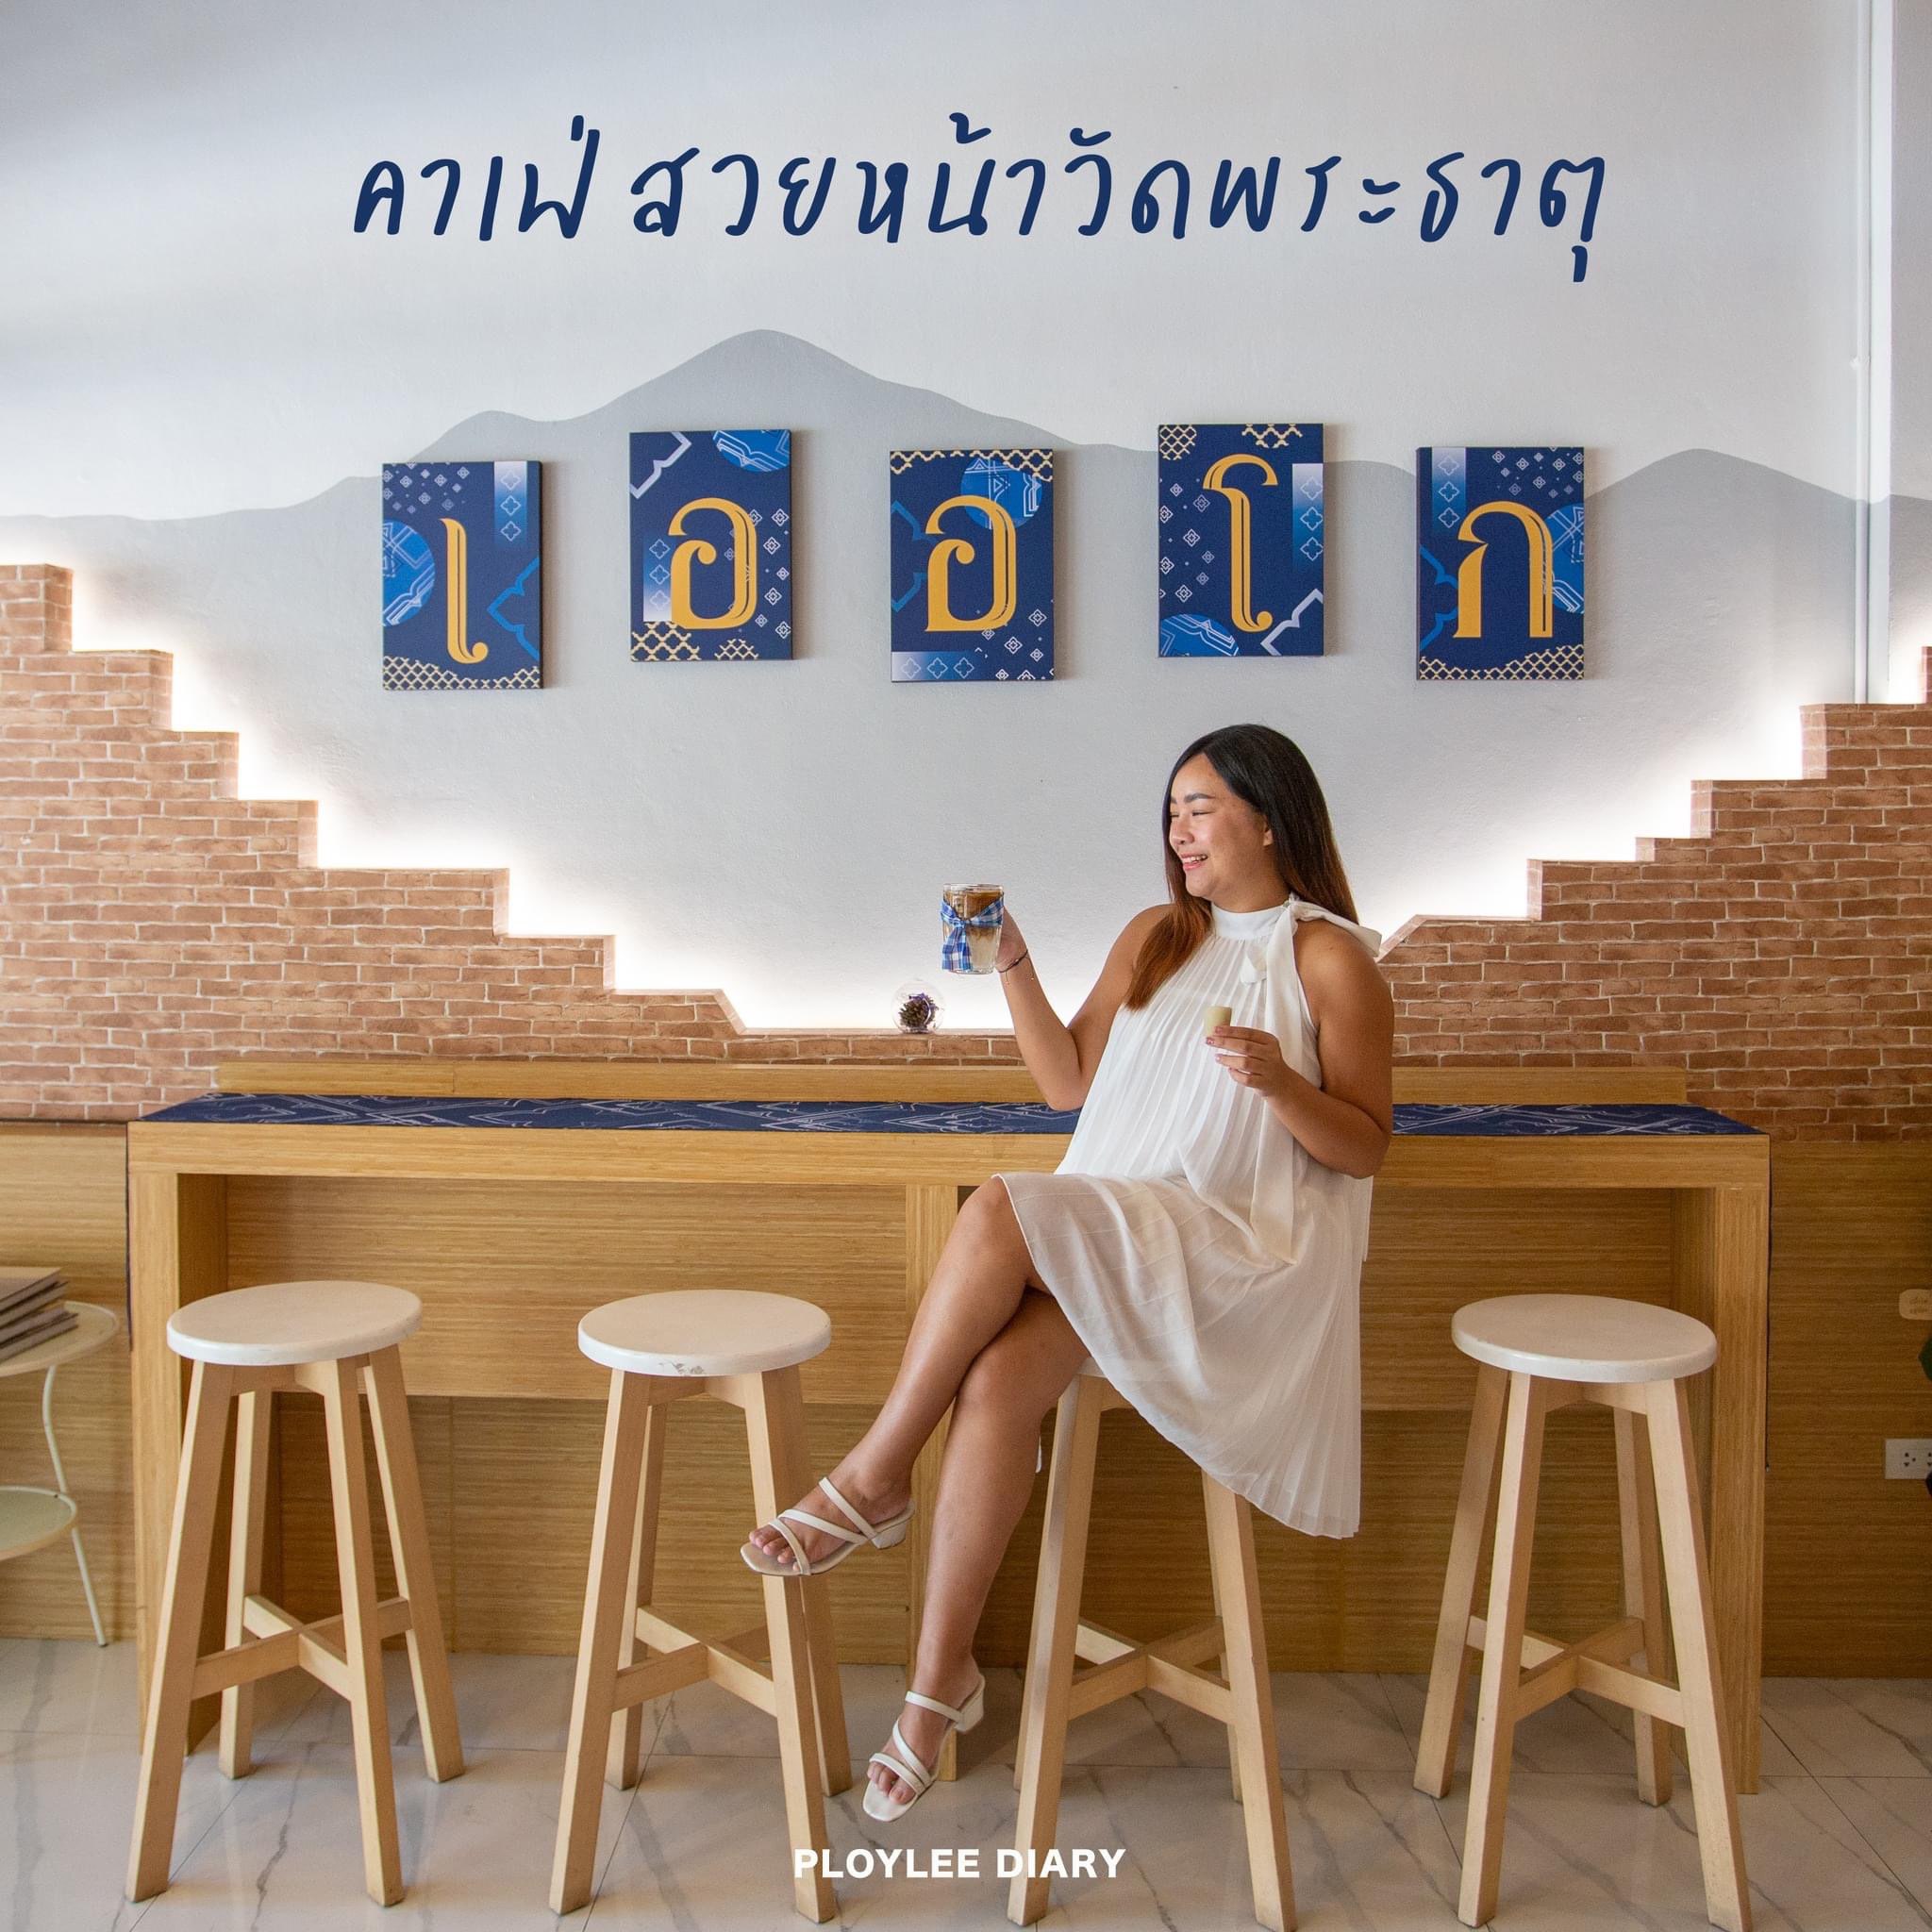 反映泰国文化的很棒的咖啡馆在 Wat Phra That附近